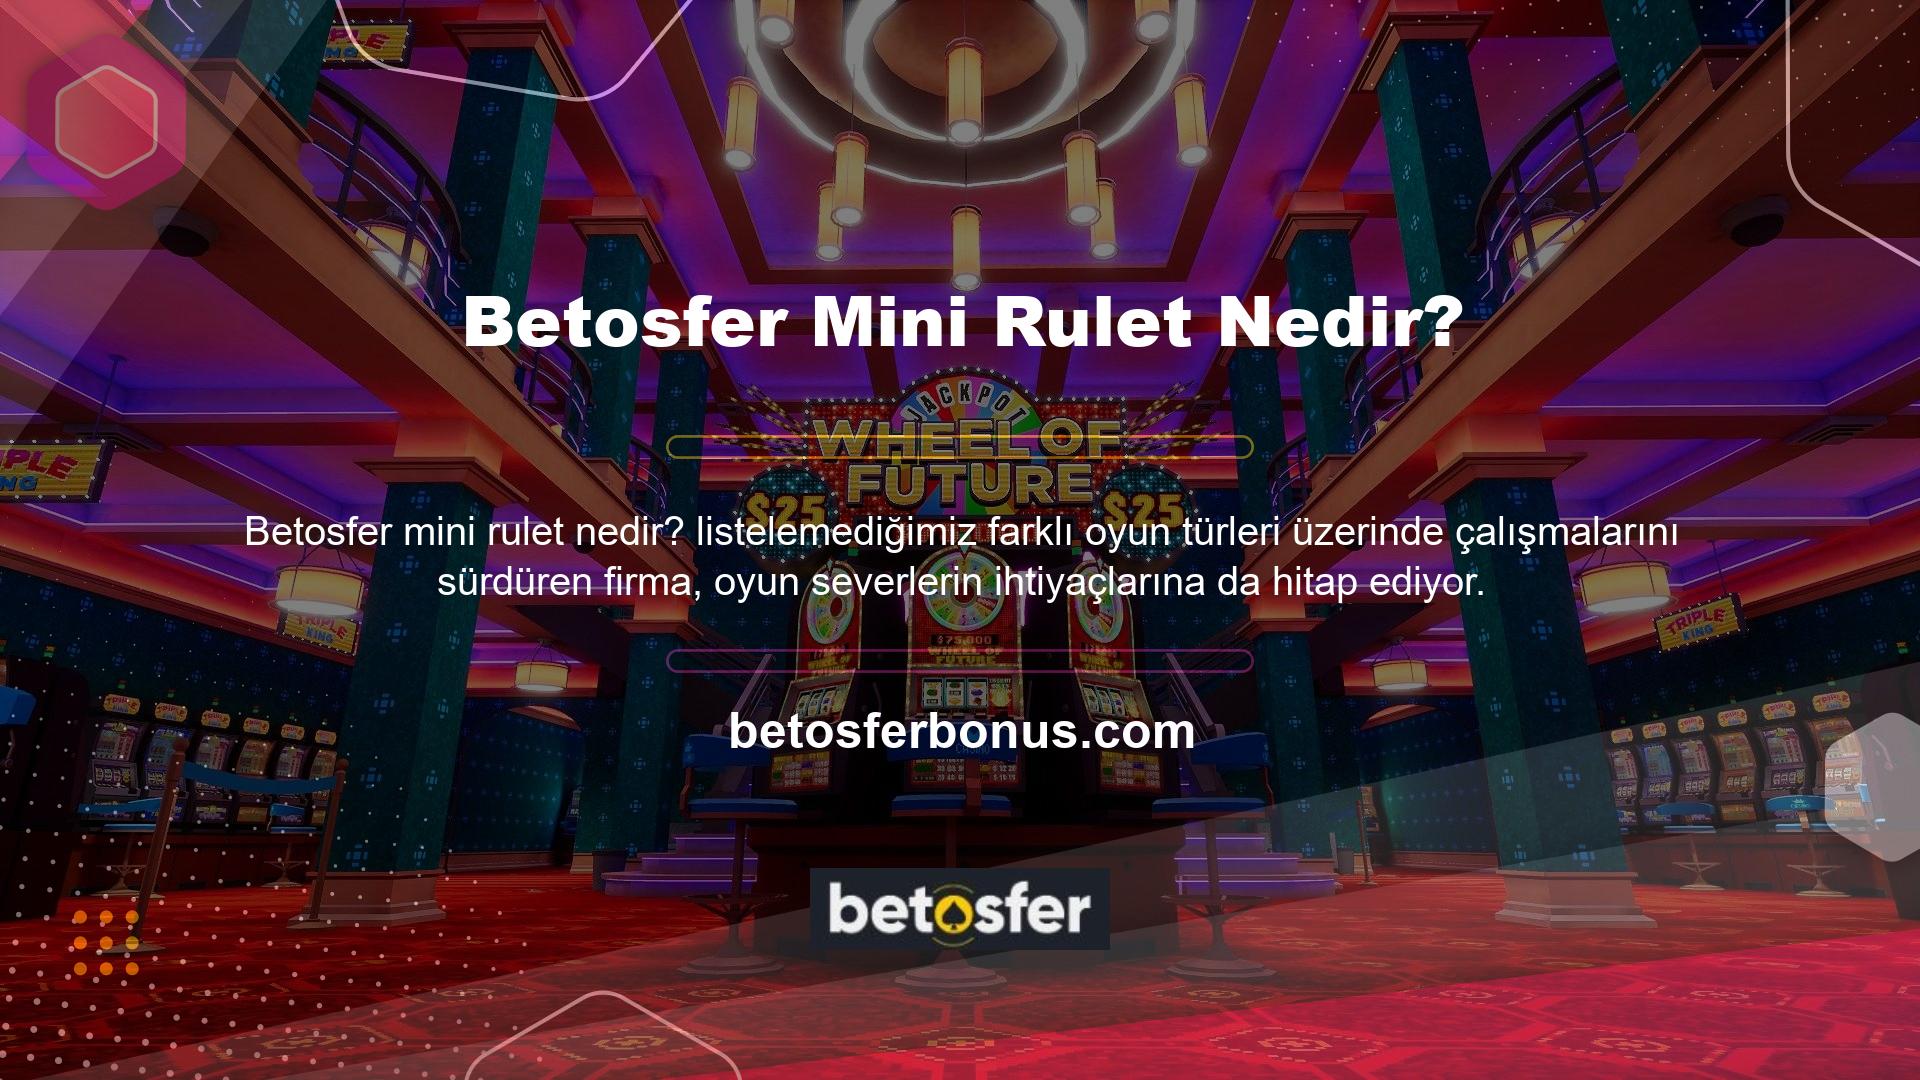 Yine de Betosfer canlı casino deneyiminin keyfini çıkarabilir ve casino dünyasına adım atabilirsiniz